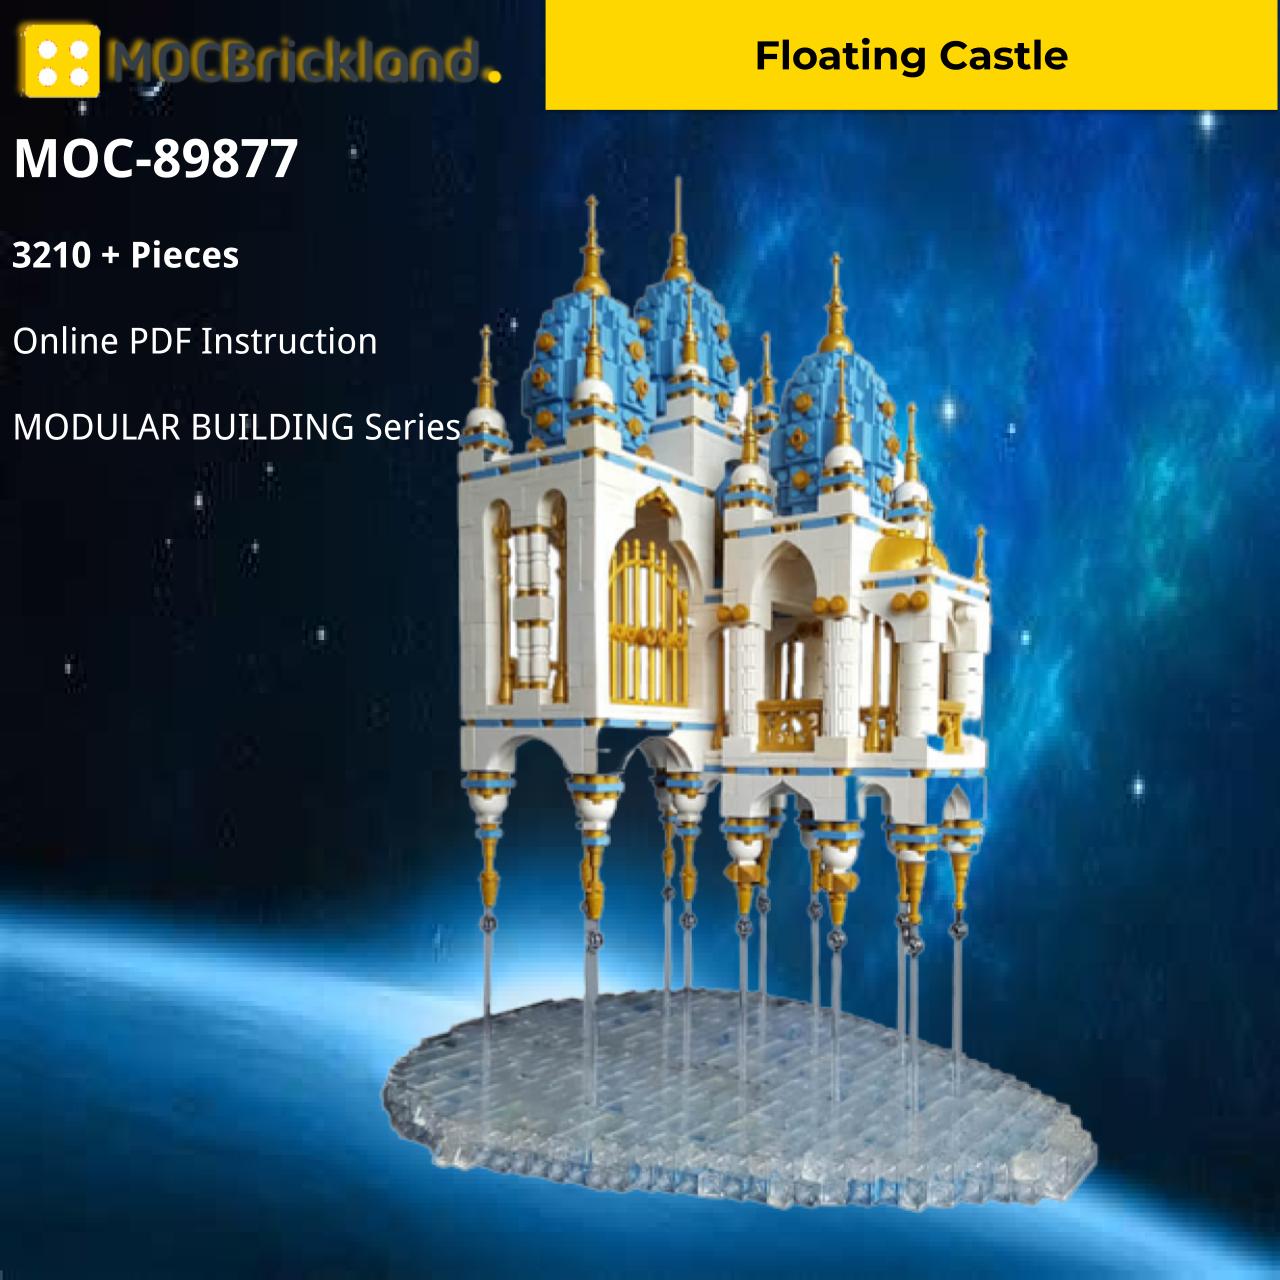 MOCBRICKLAND MOC-89877 Floating Castle